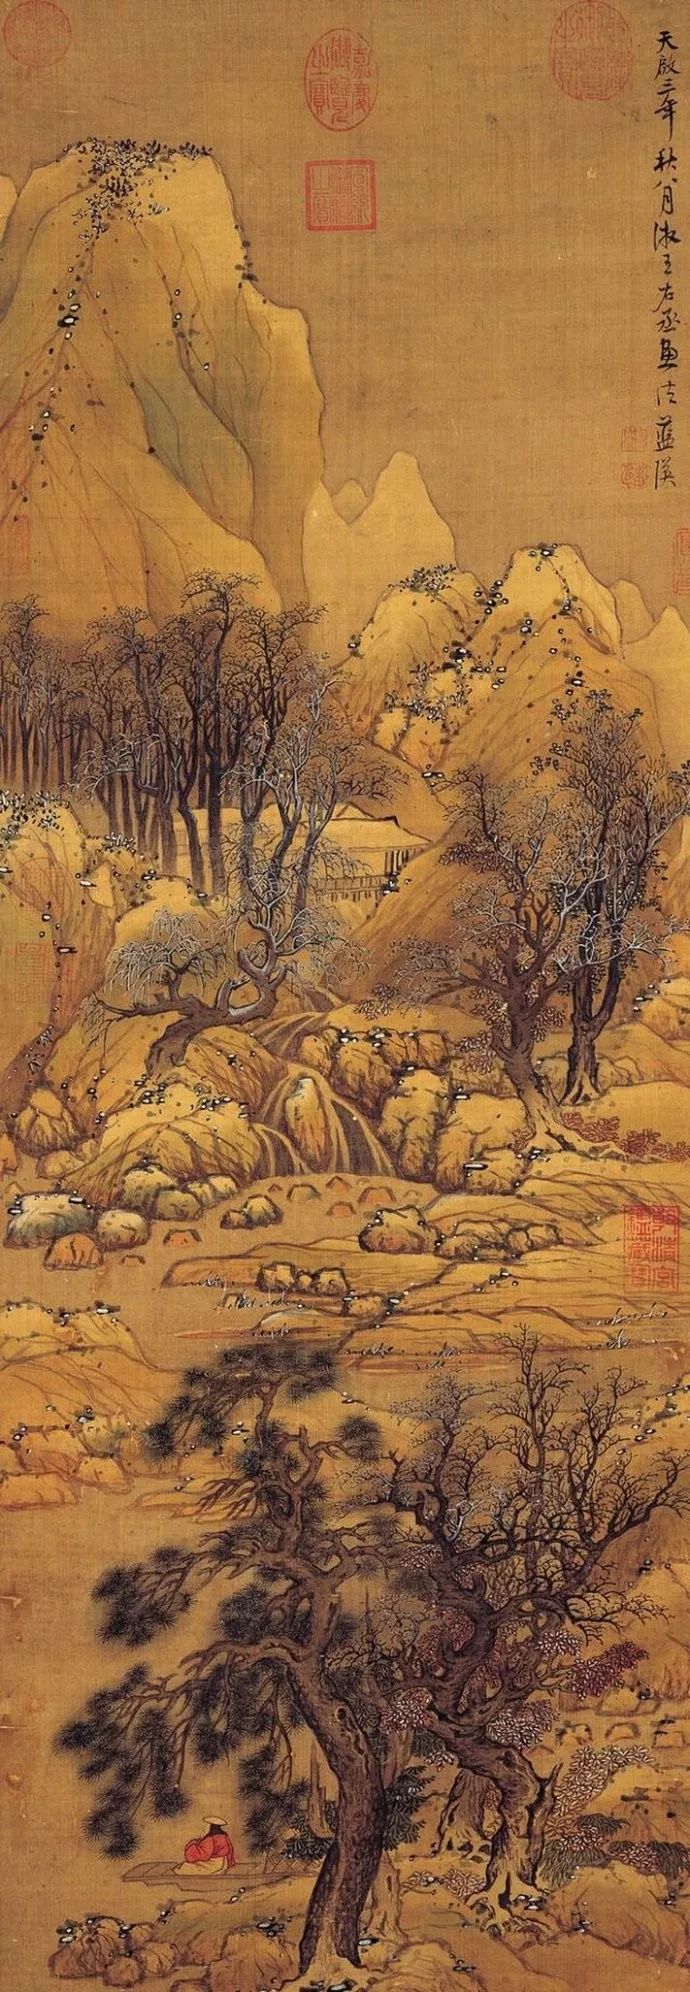 《溪山雪霁图》,现藏台北故宫博物院清王时敏《仿王维江山雪霁图》,现